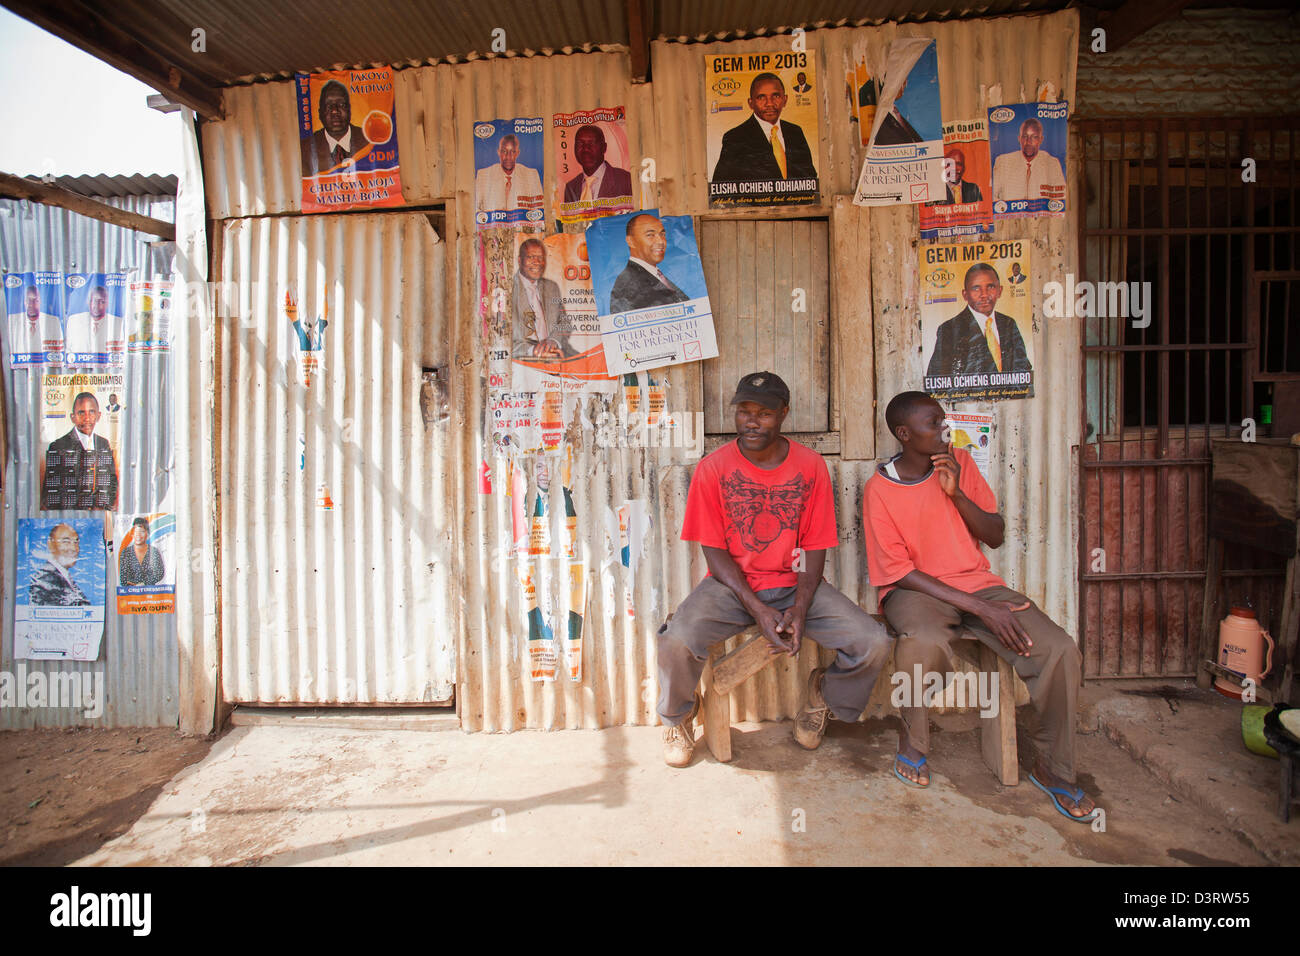 Gli uomini seduti davanti a negozio chiuso coperto con manifesto politico, Yala, nella provincia di Nyanza, Kenya, febbraio 2013. Foto Stock